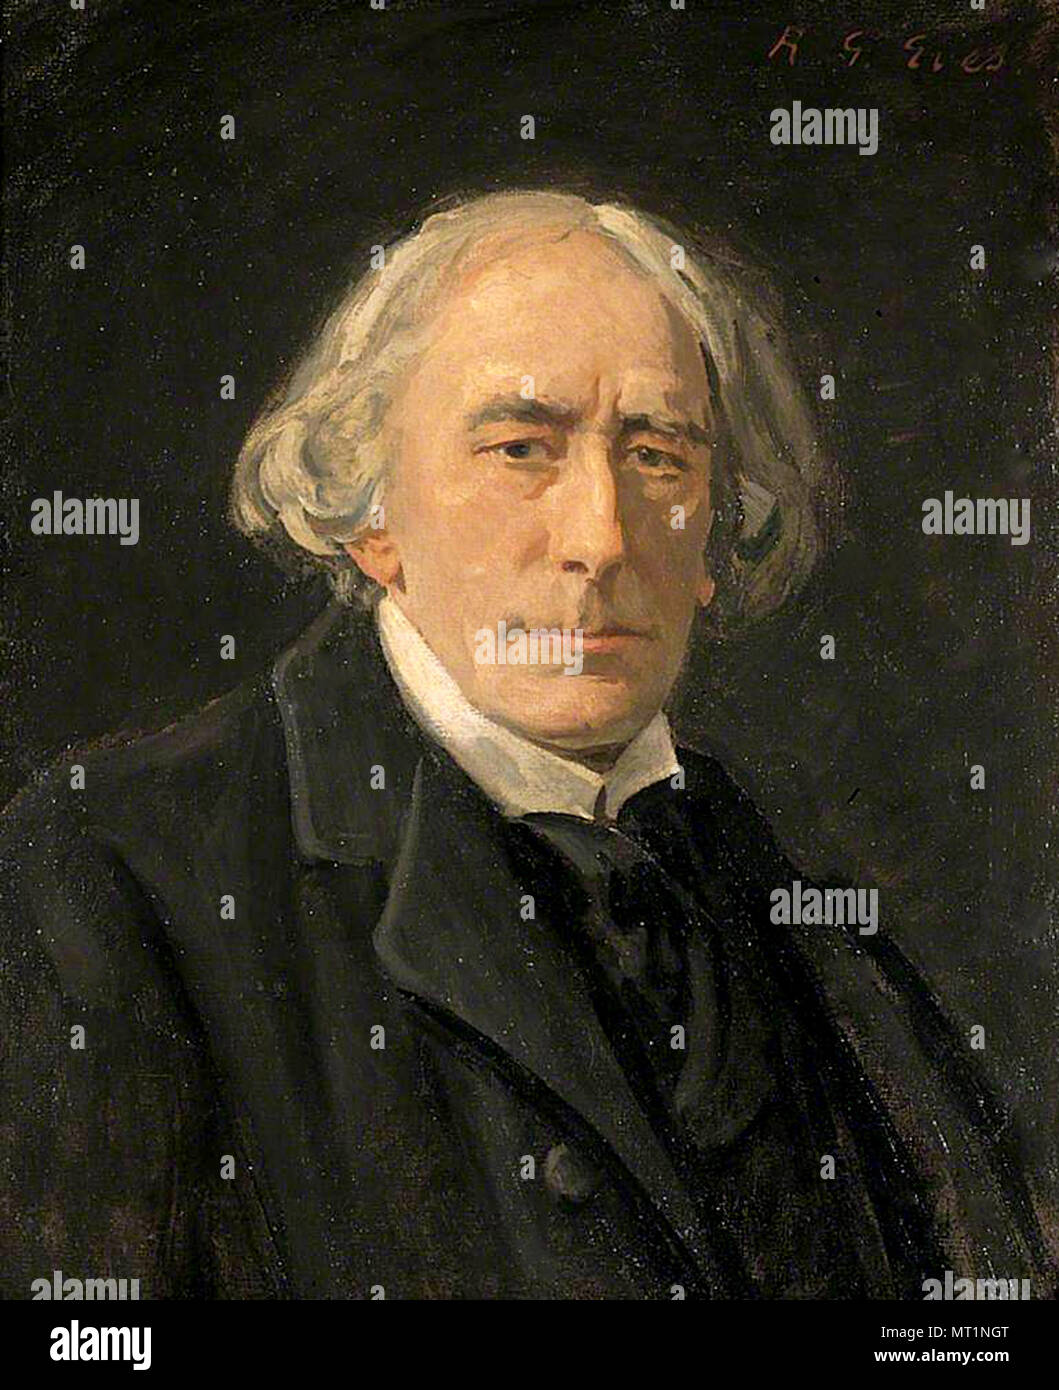 Sir Henry Irving (1838 - 1905), John Henry Brodribb, J. H. Irving, l'anglais d'un acteur à l'ère victorienne Banque D'Images